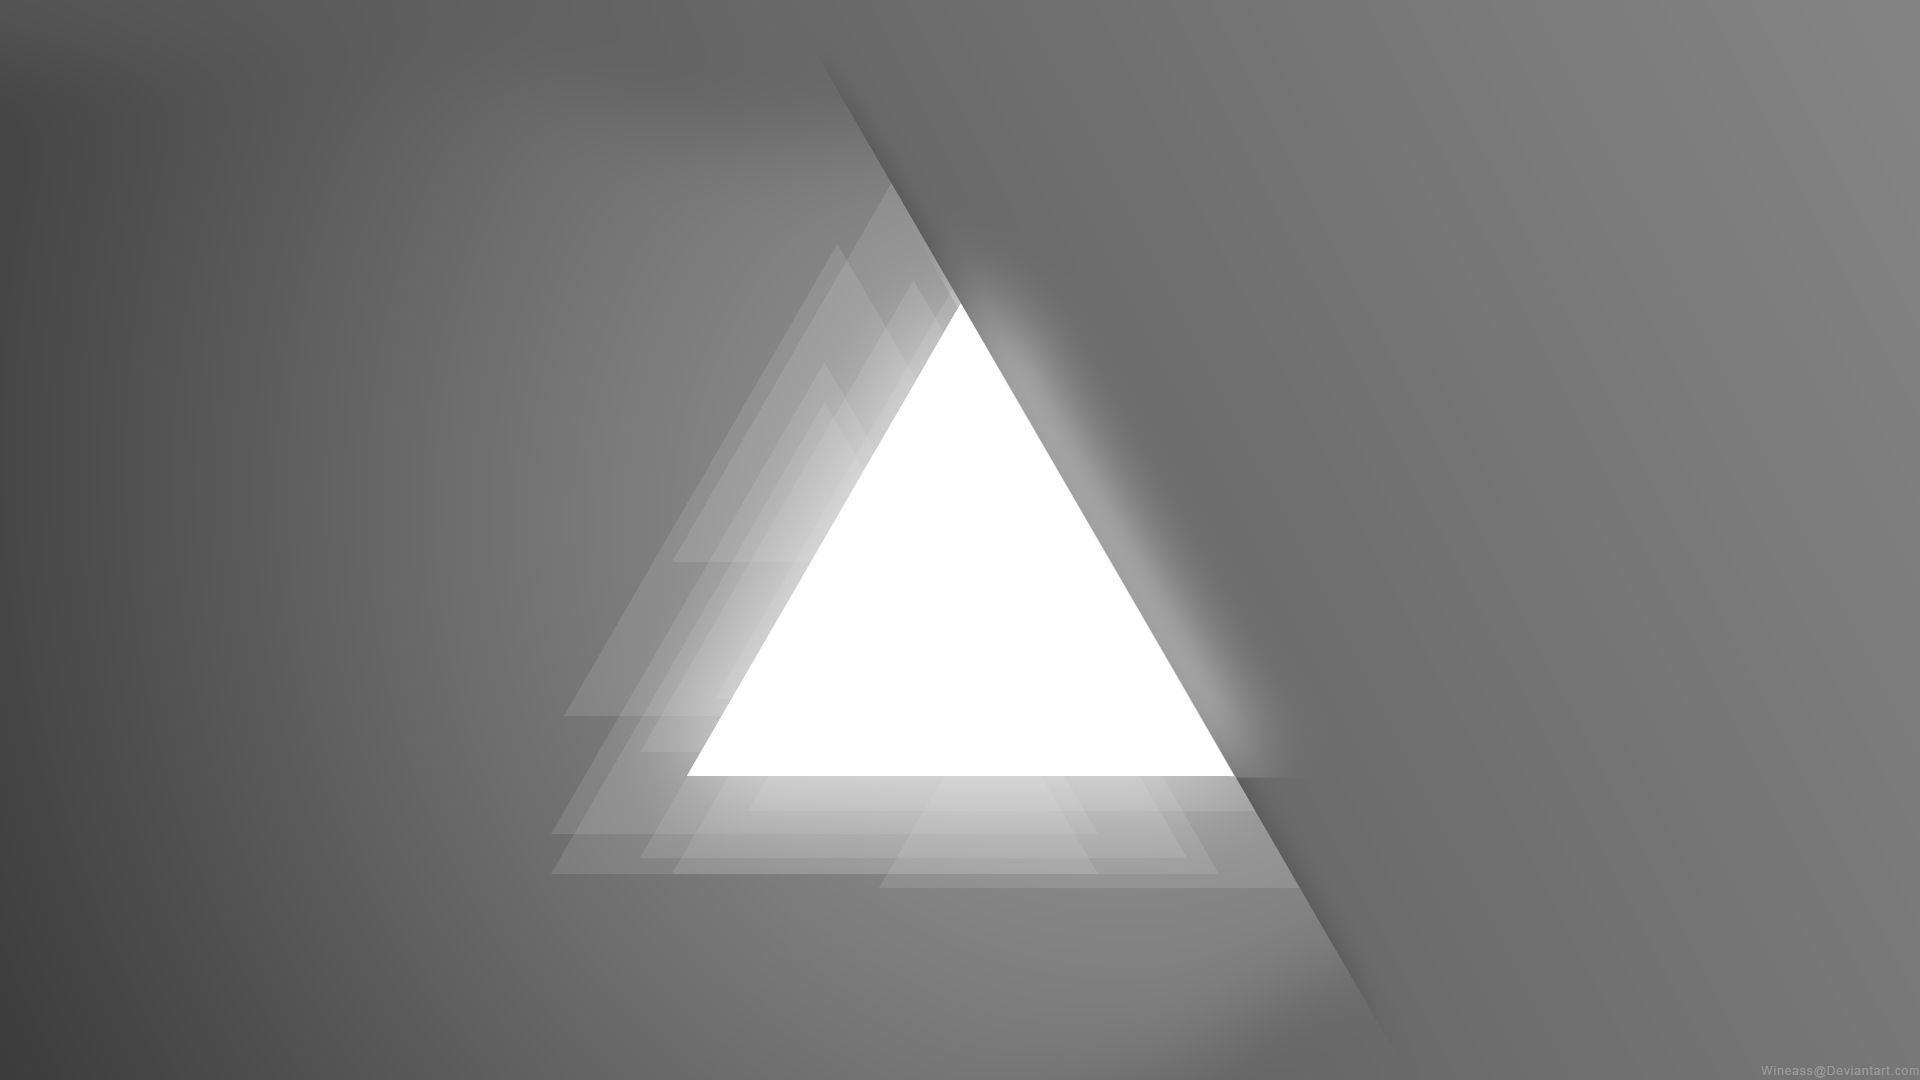 شیک ترین تصویر مینیمالیستی 4K با طرح مثلث برای دسکتاپ